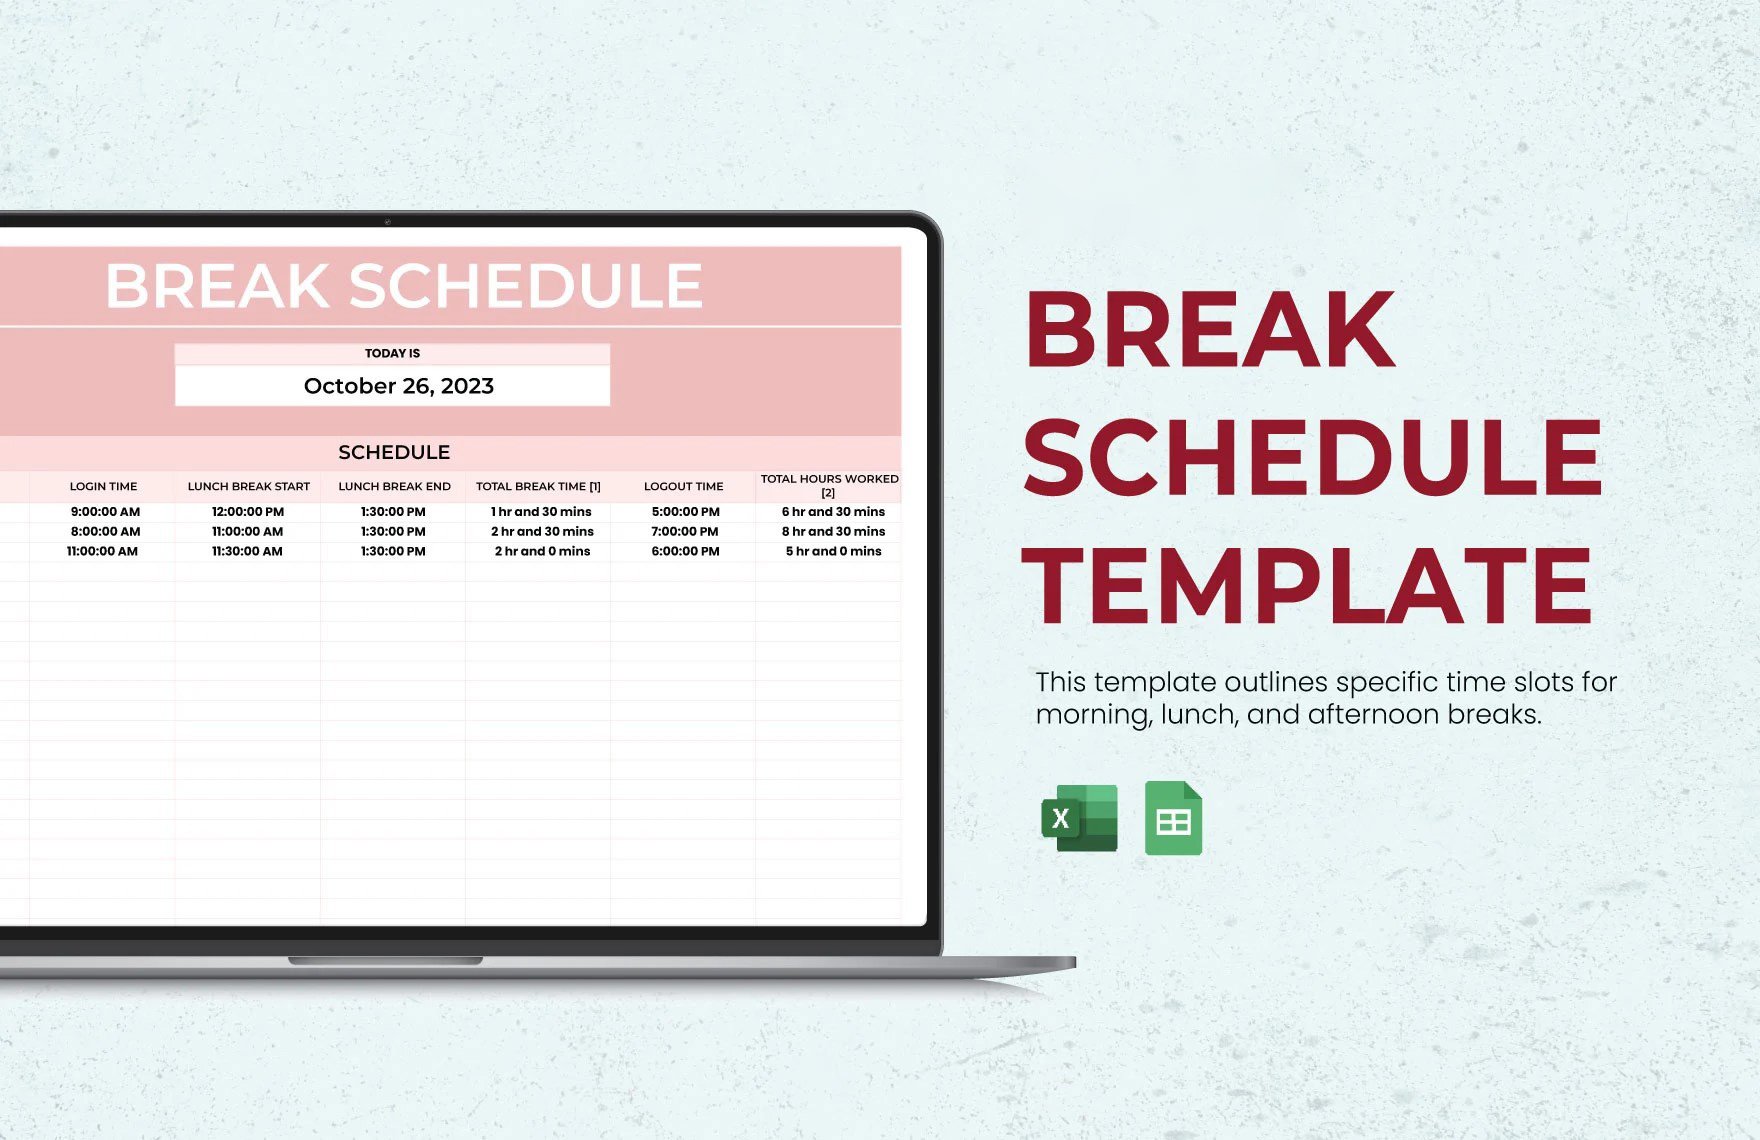 Break Schedule Template in Excel, Google Sheets